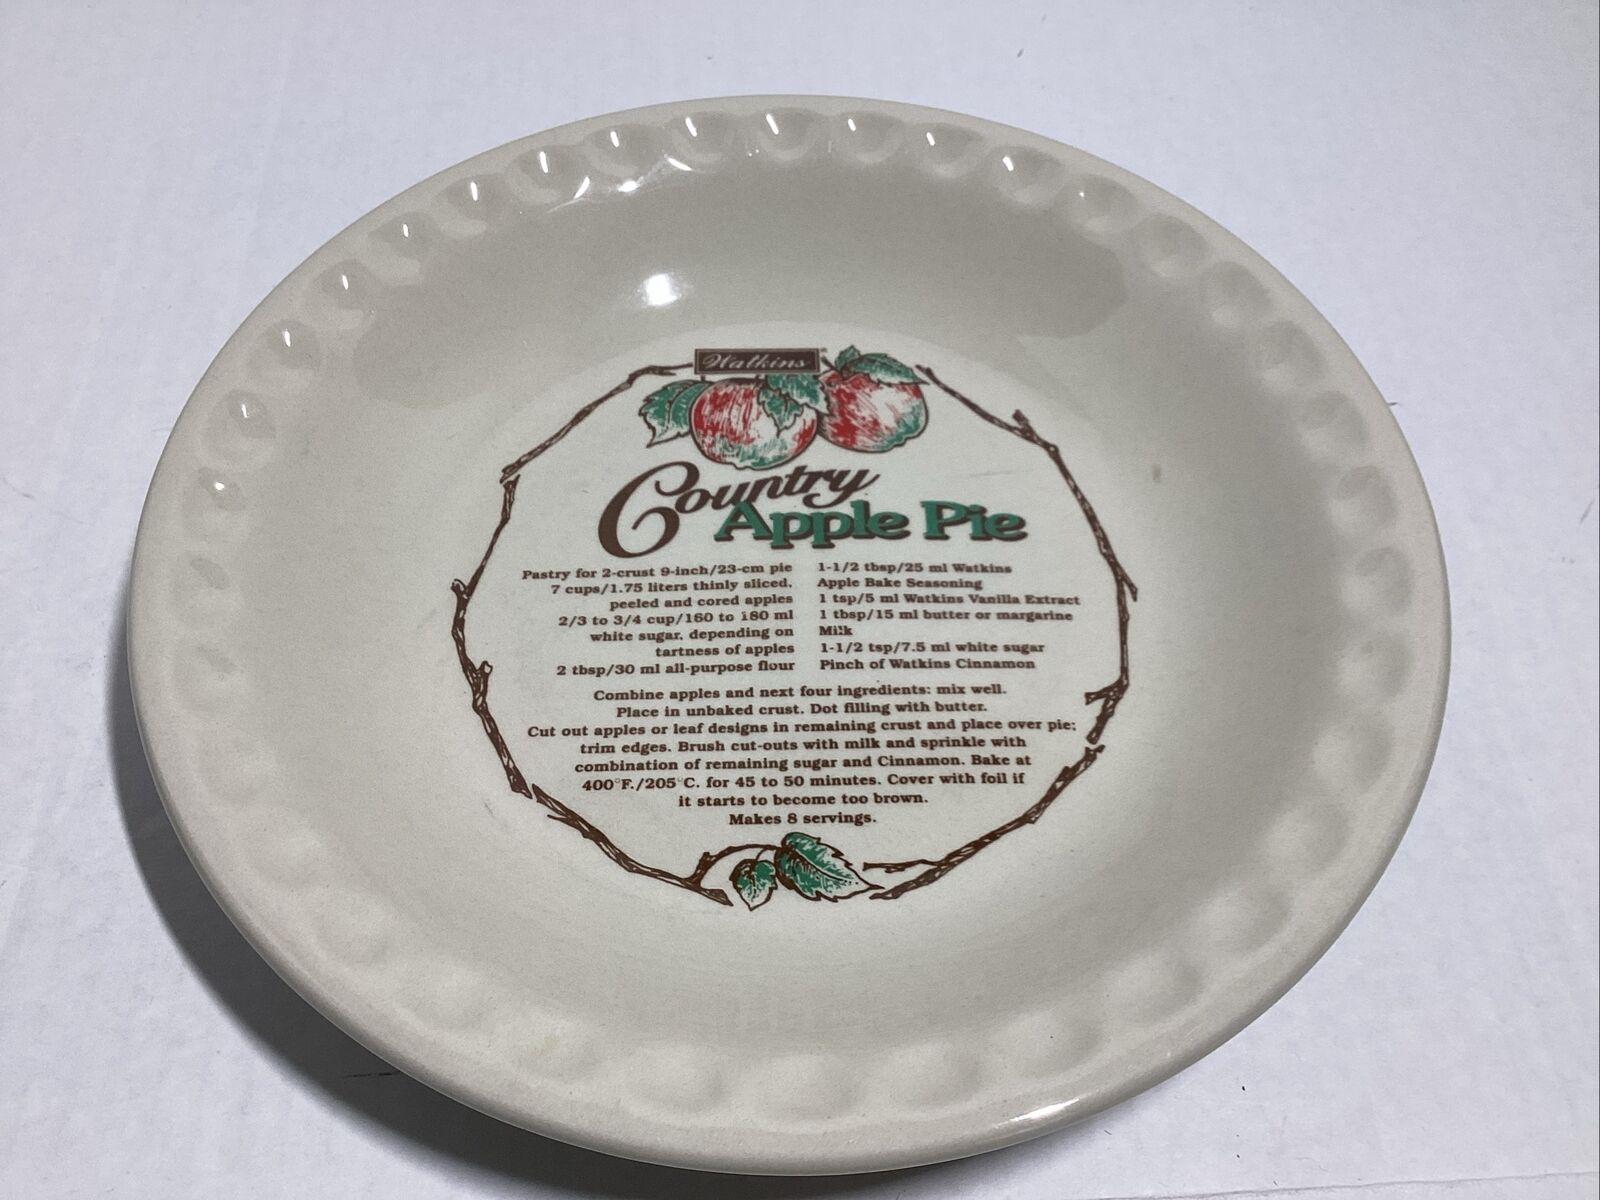 Vintage 1996 Watkins Country Apple Pie Plate 10 1/4” Recipe